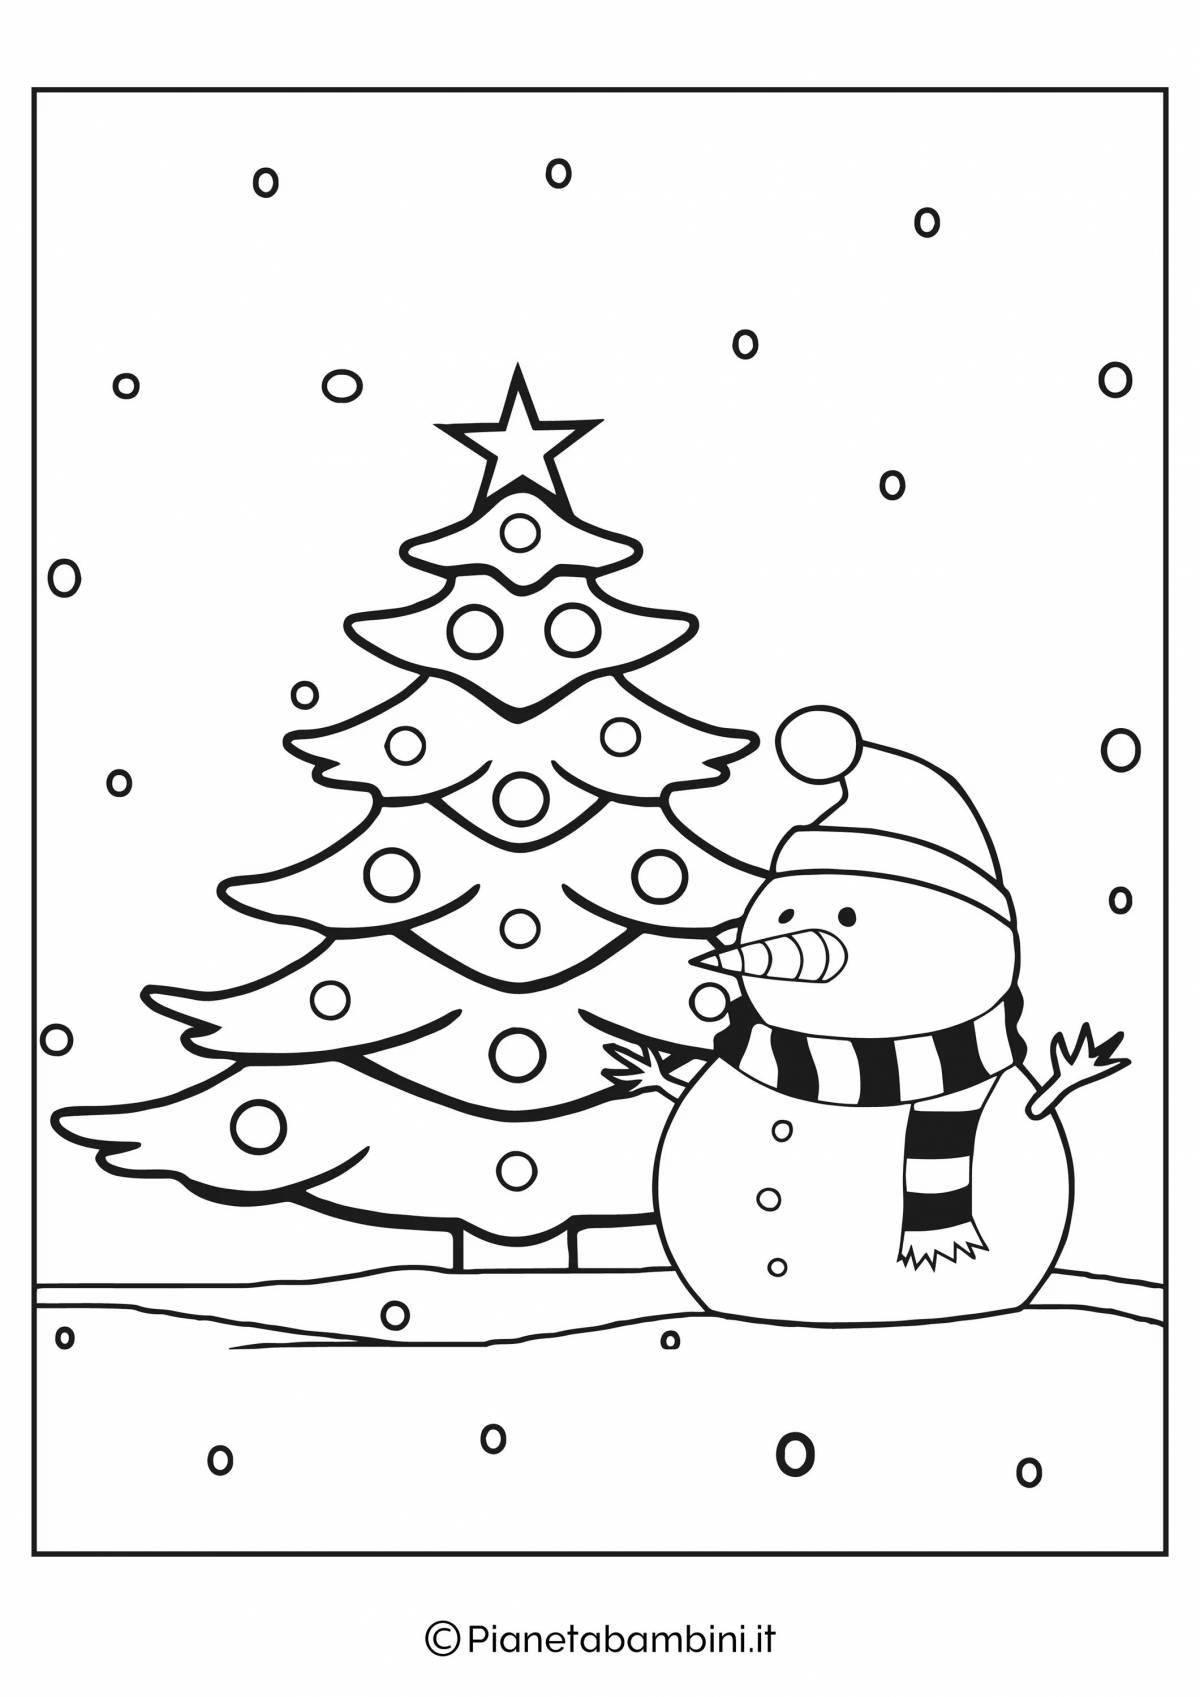 Очаровательная раскраска рождественская елка для детей